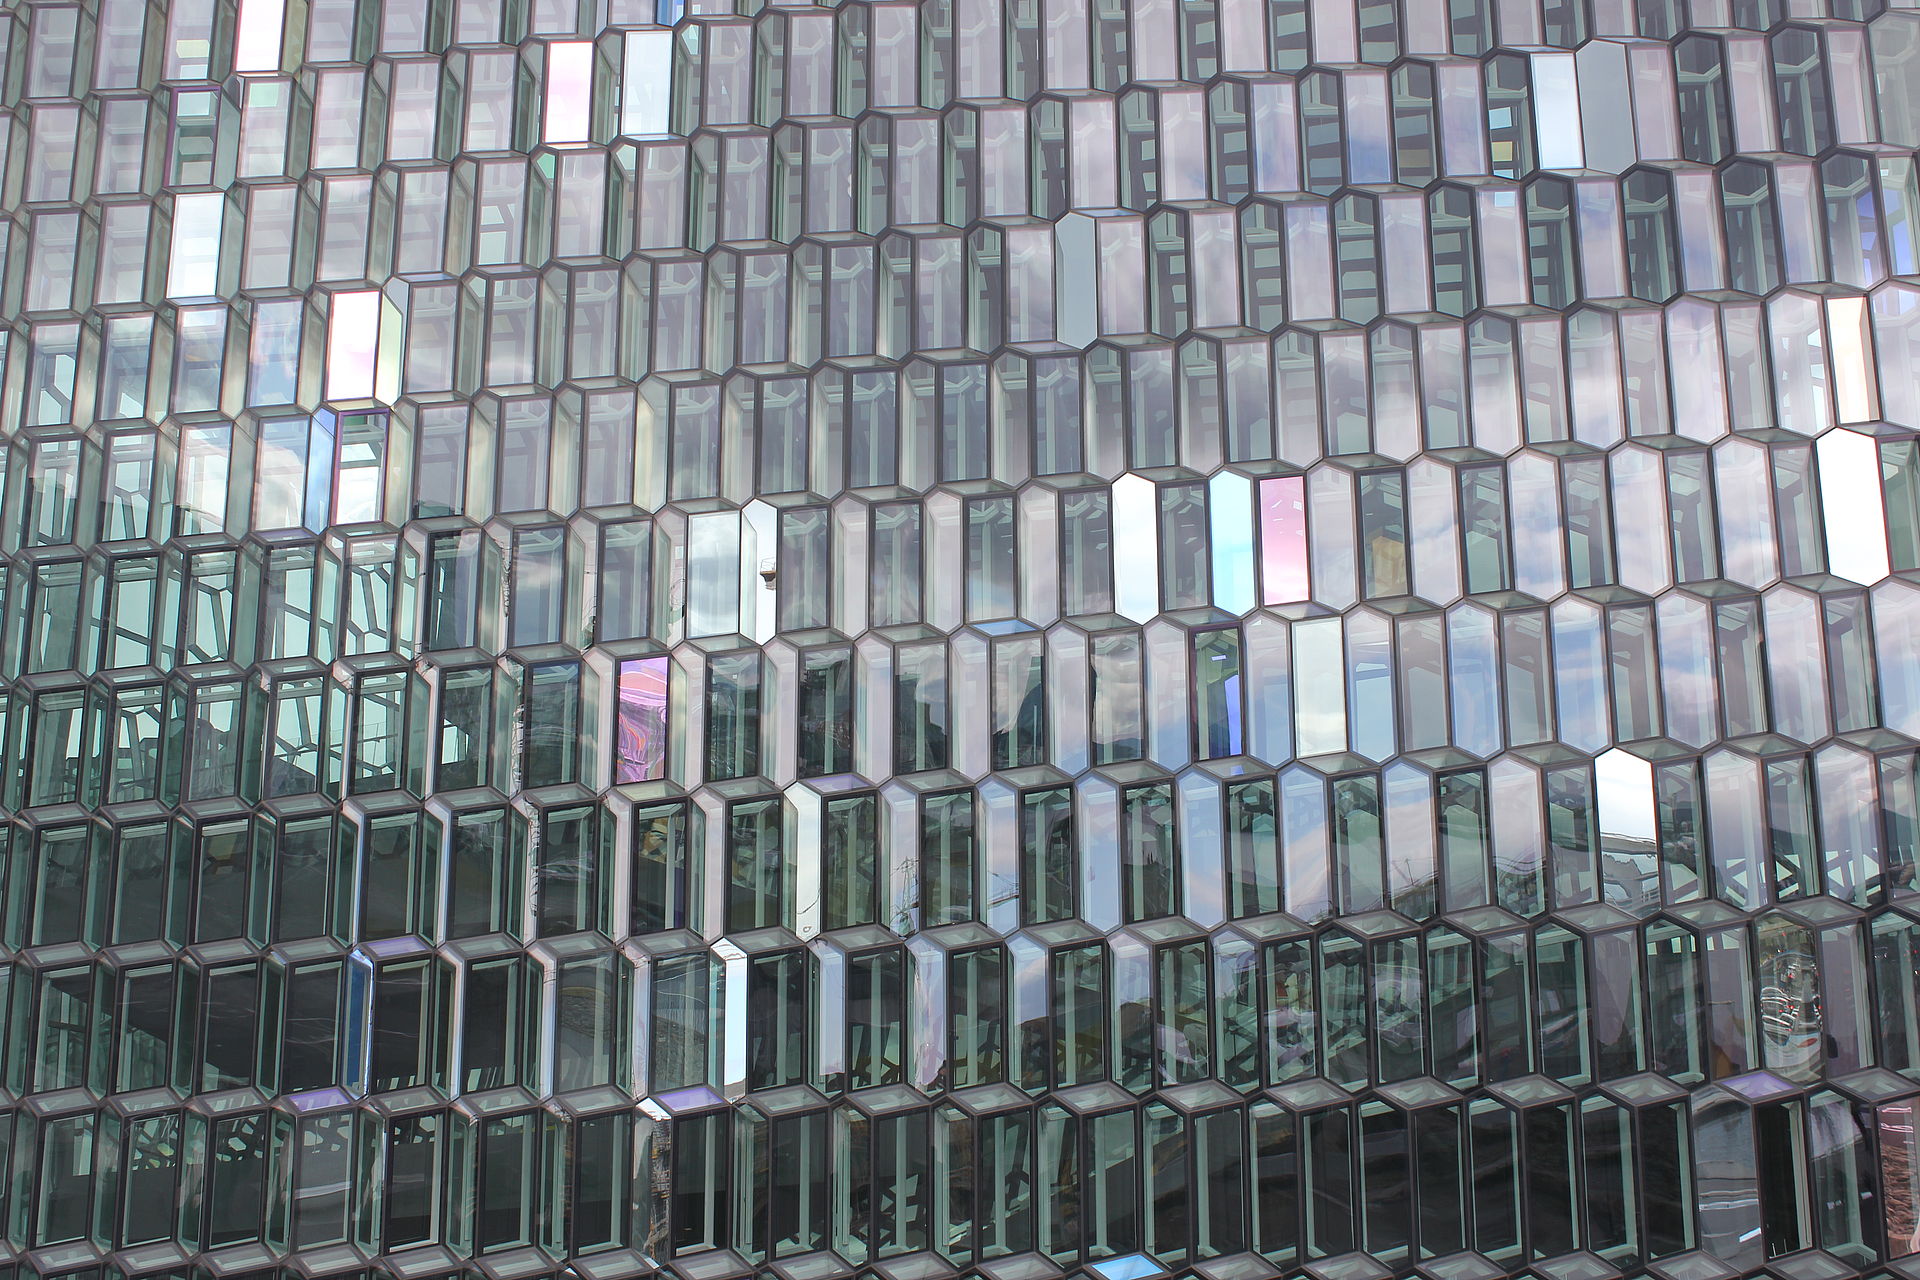 Glasfassade mit unzähligen Fenstern füllt das Bild aus